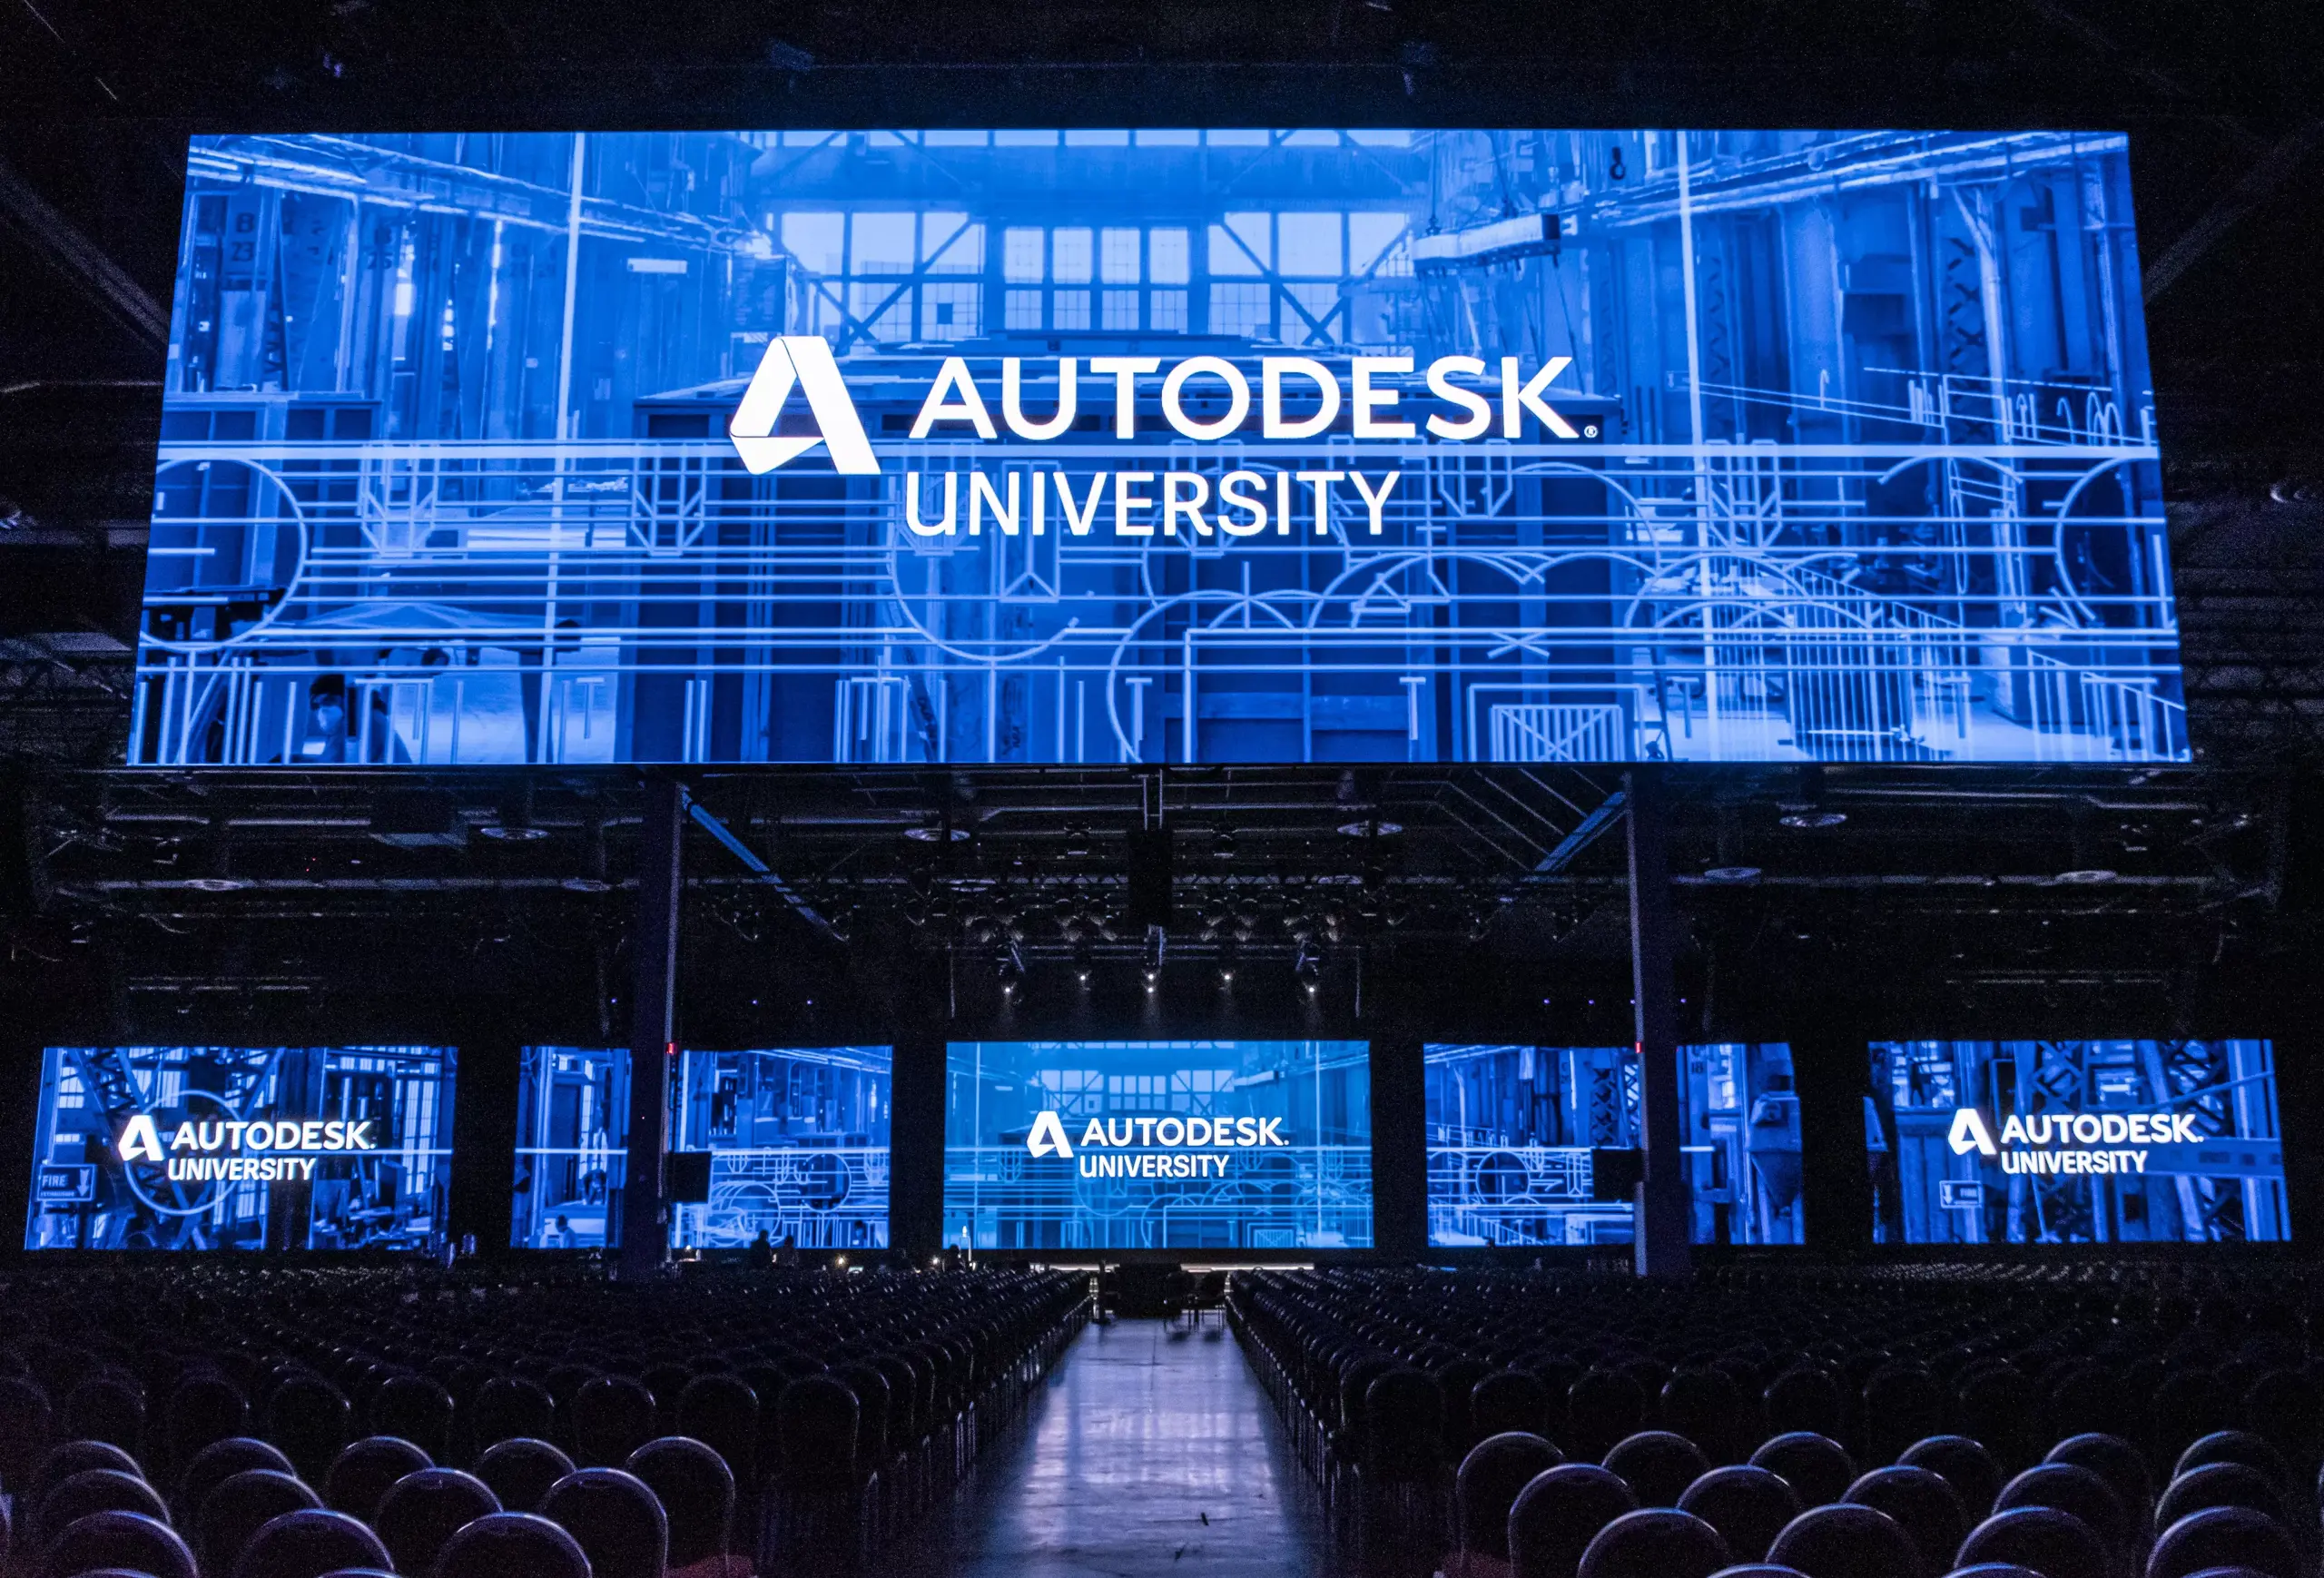 Autodesk ヘッダー画像